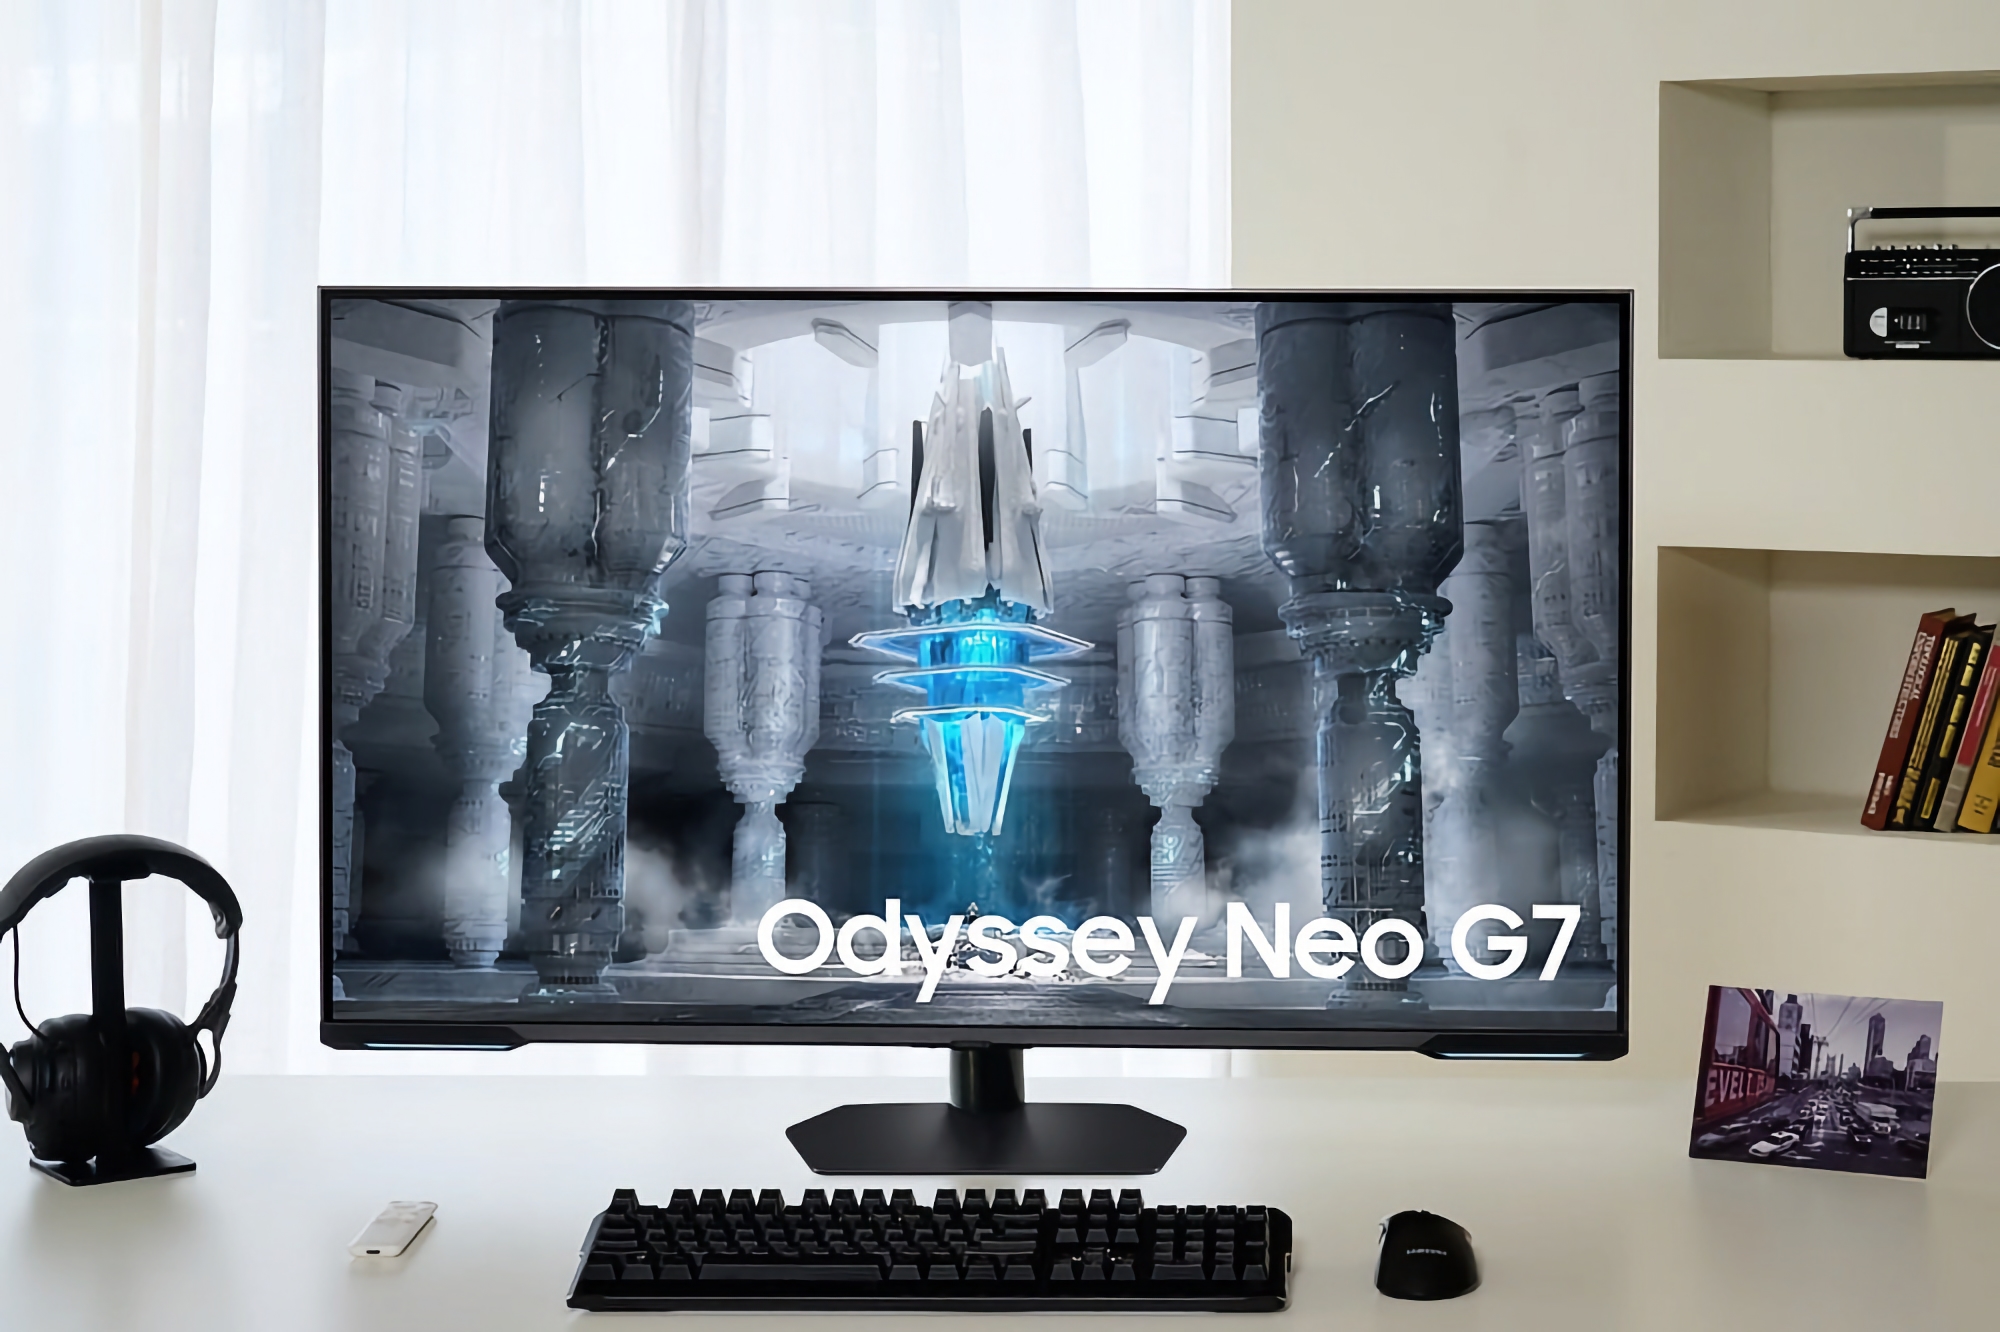 Samsung ha presentato l'Odyssey Neo G7 (G70NC): monitor da gioco da 43 pollici con schermo Mini LED 4K a 144 Hz per 982 dollari